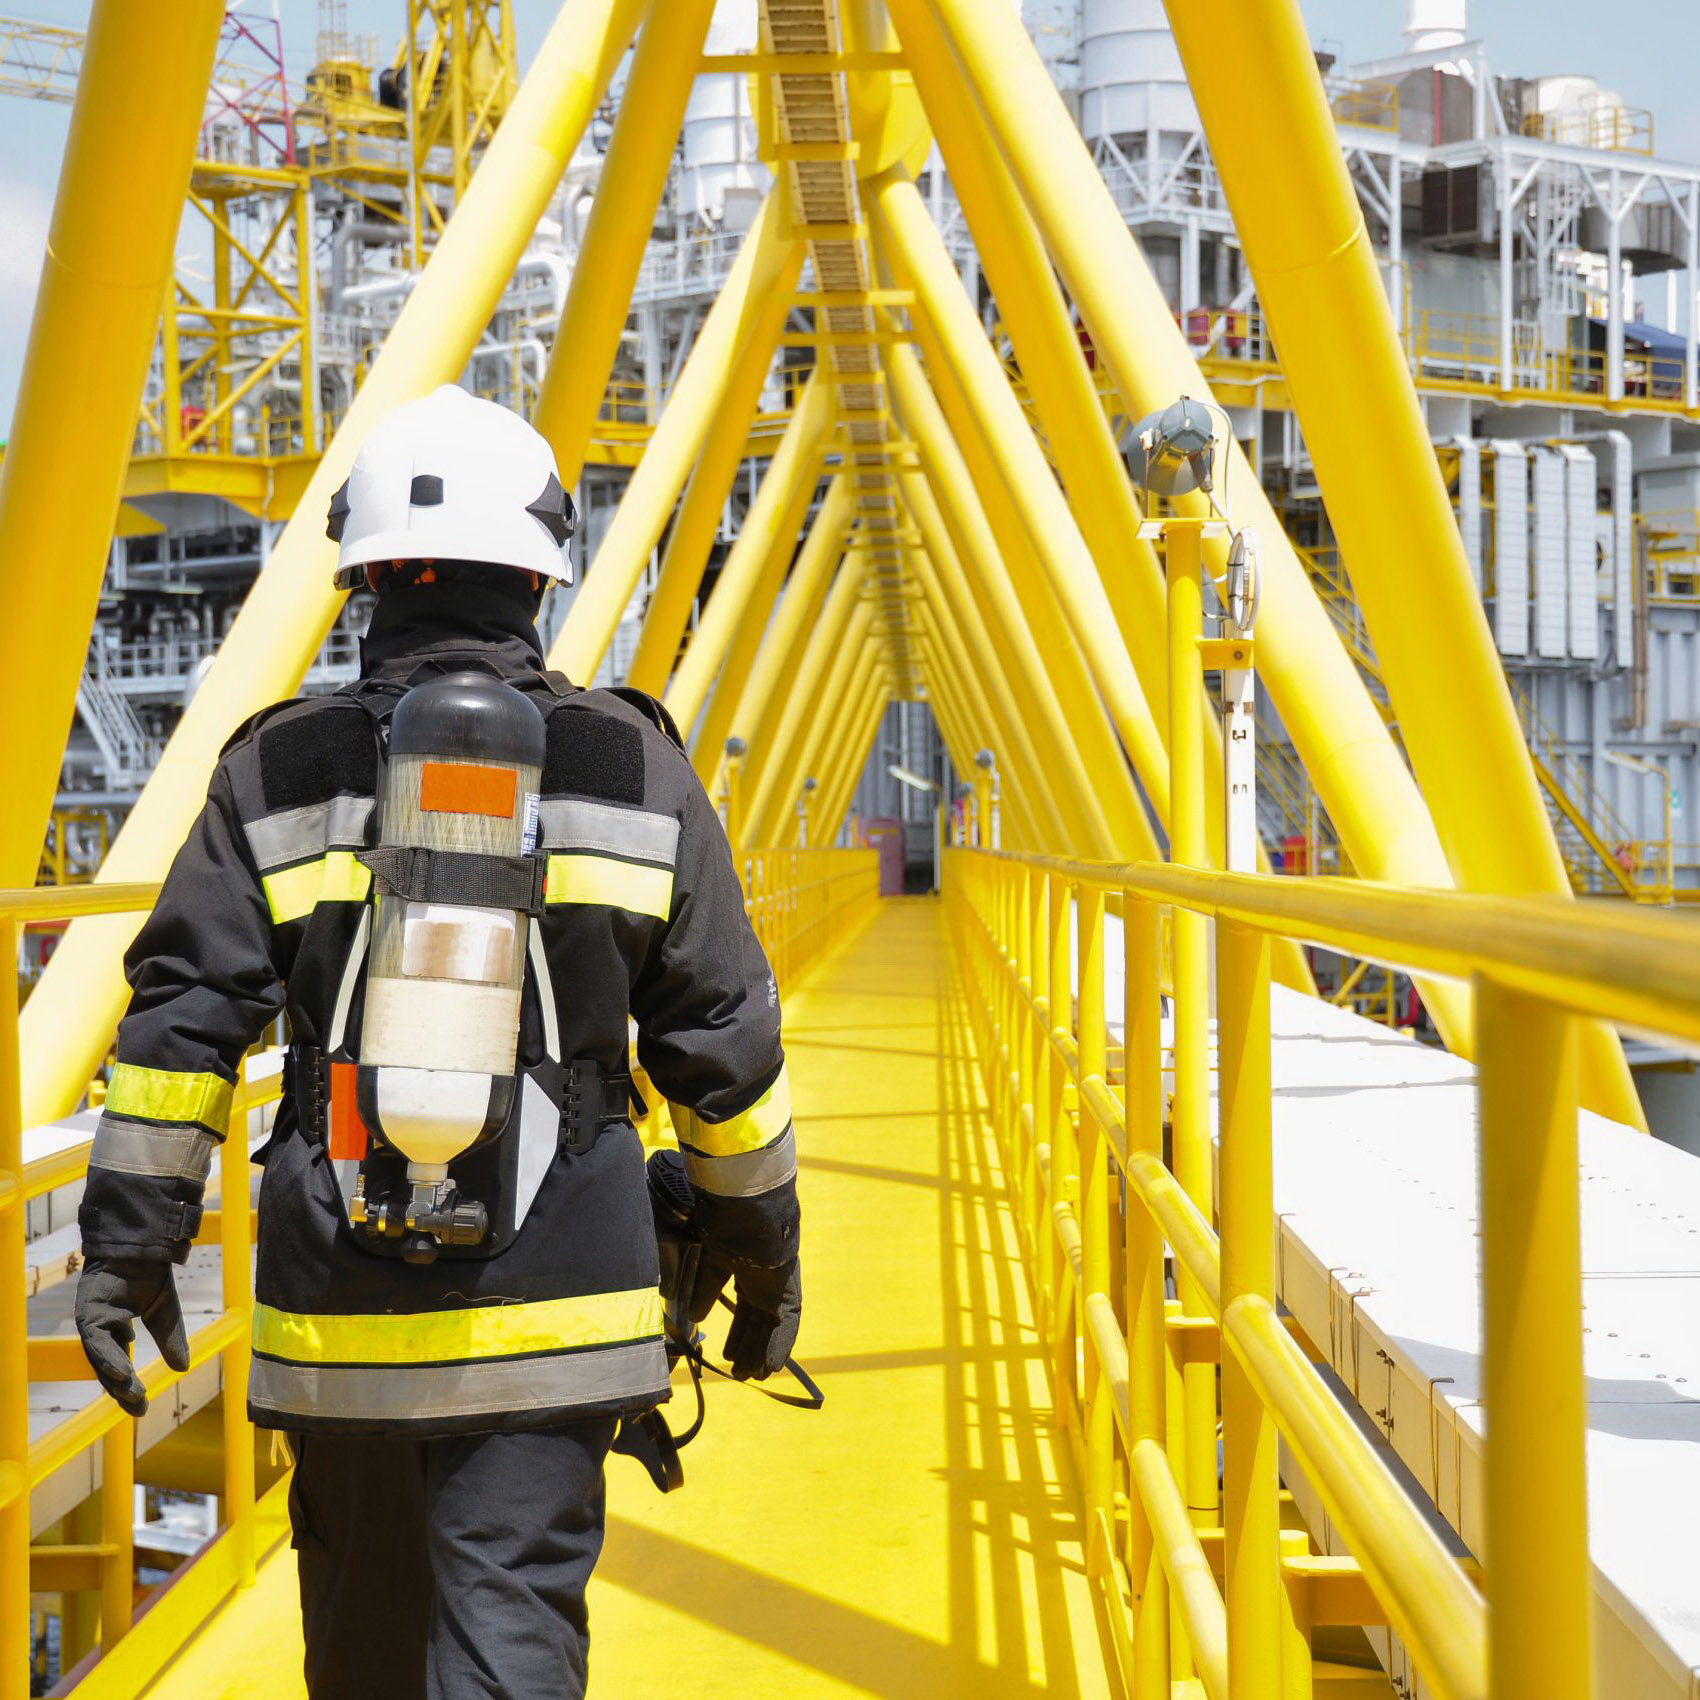 معايير السلامة في مجمعات المشتقات النفطية ومحطات التوزيع